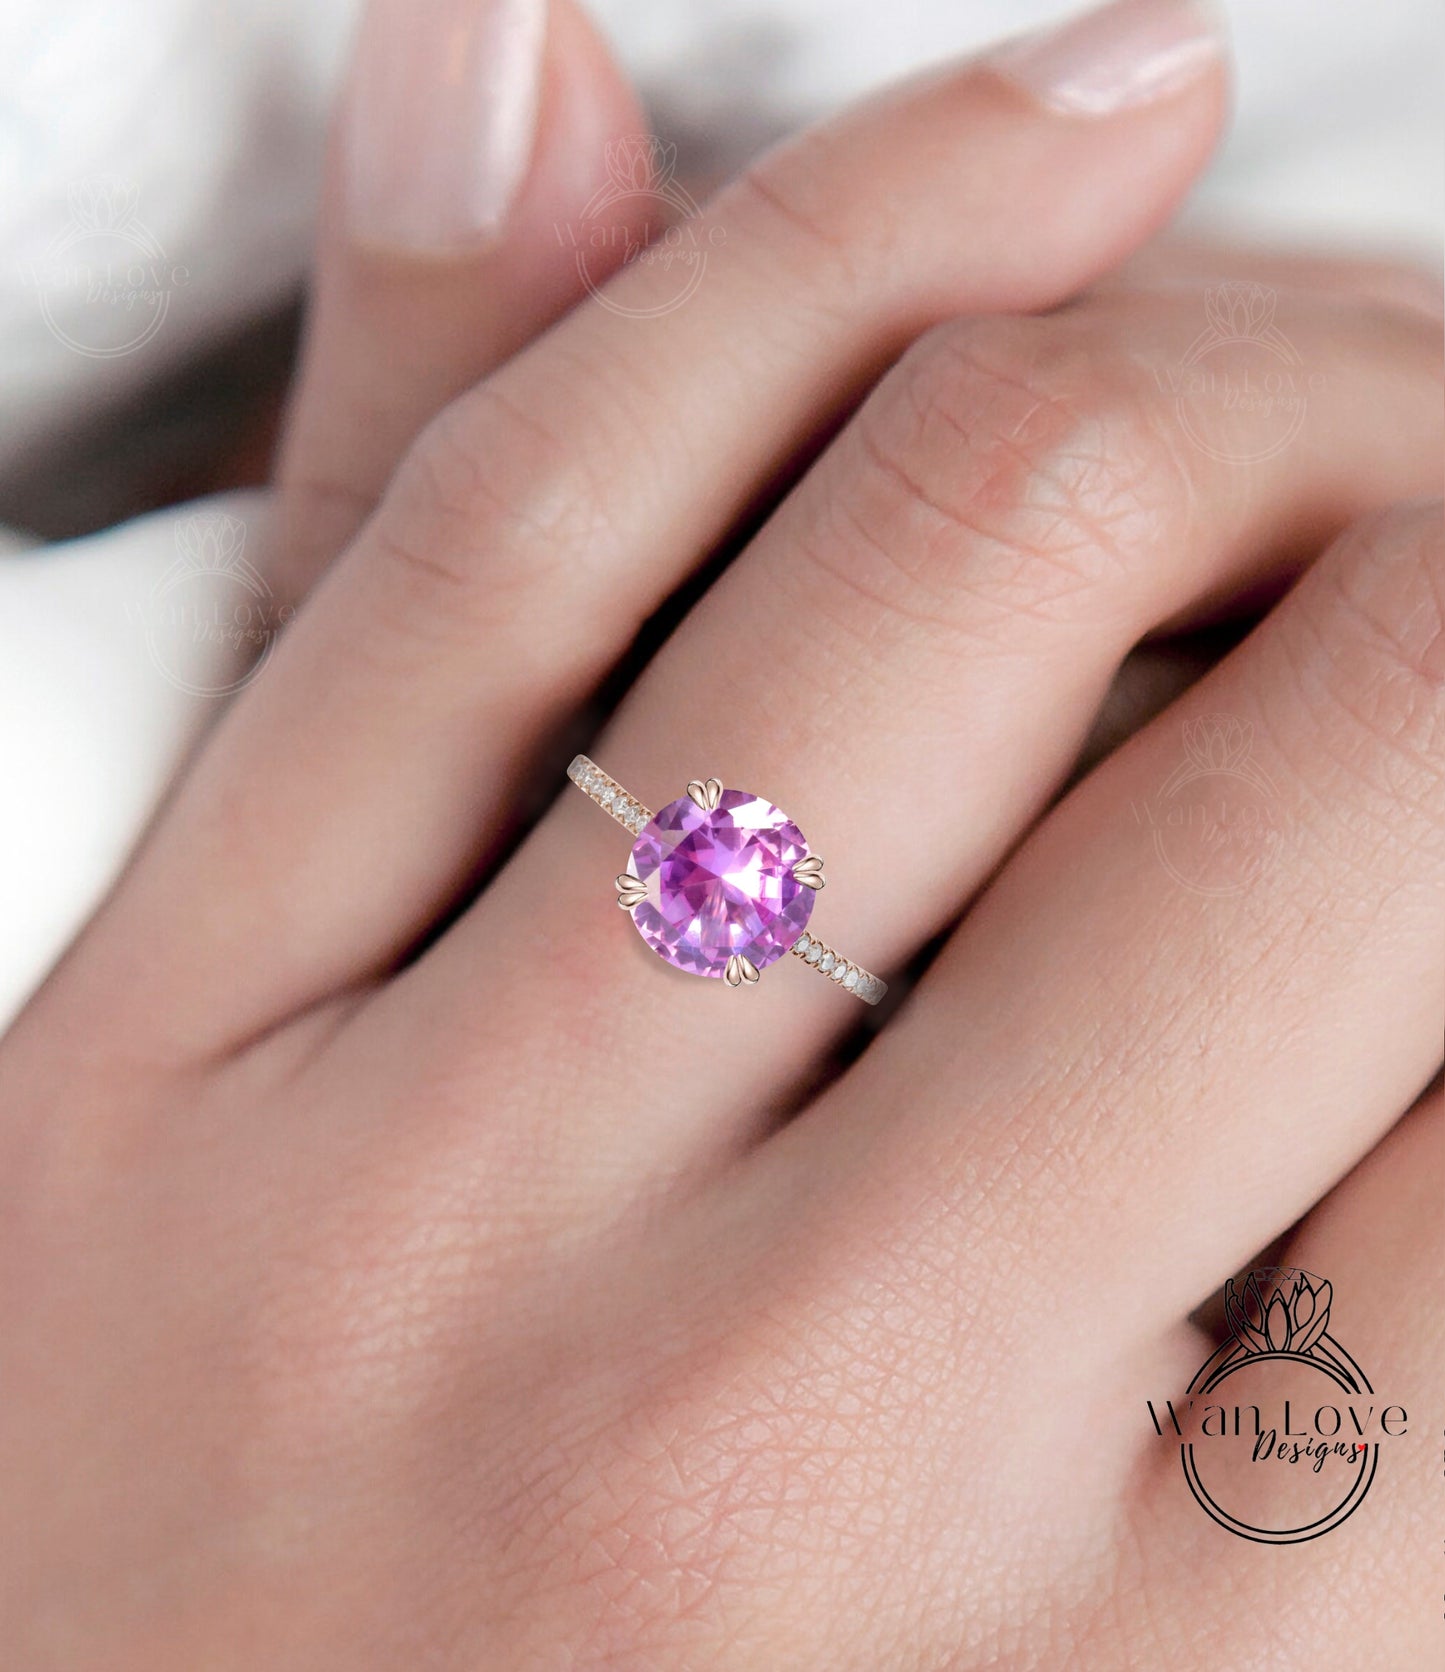 Pink Sapphire & Diamond Round Engagement Ring Basket Solitaire, 14k 18k White Yellow Rose Gold,Platinum,Custom made,Wedding,Anniversary